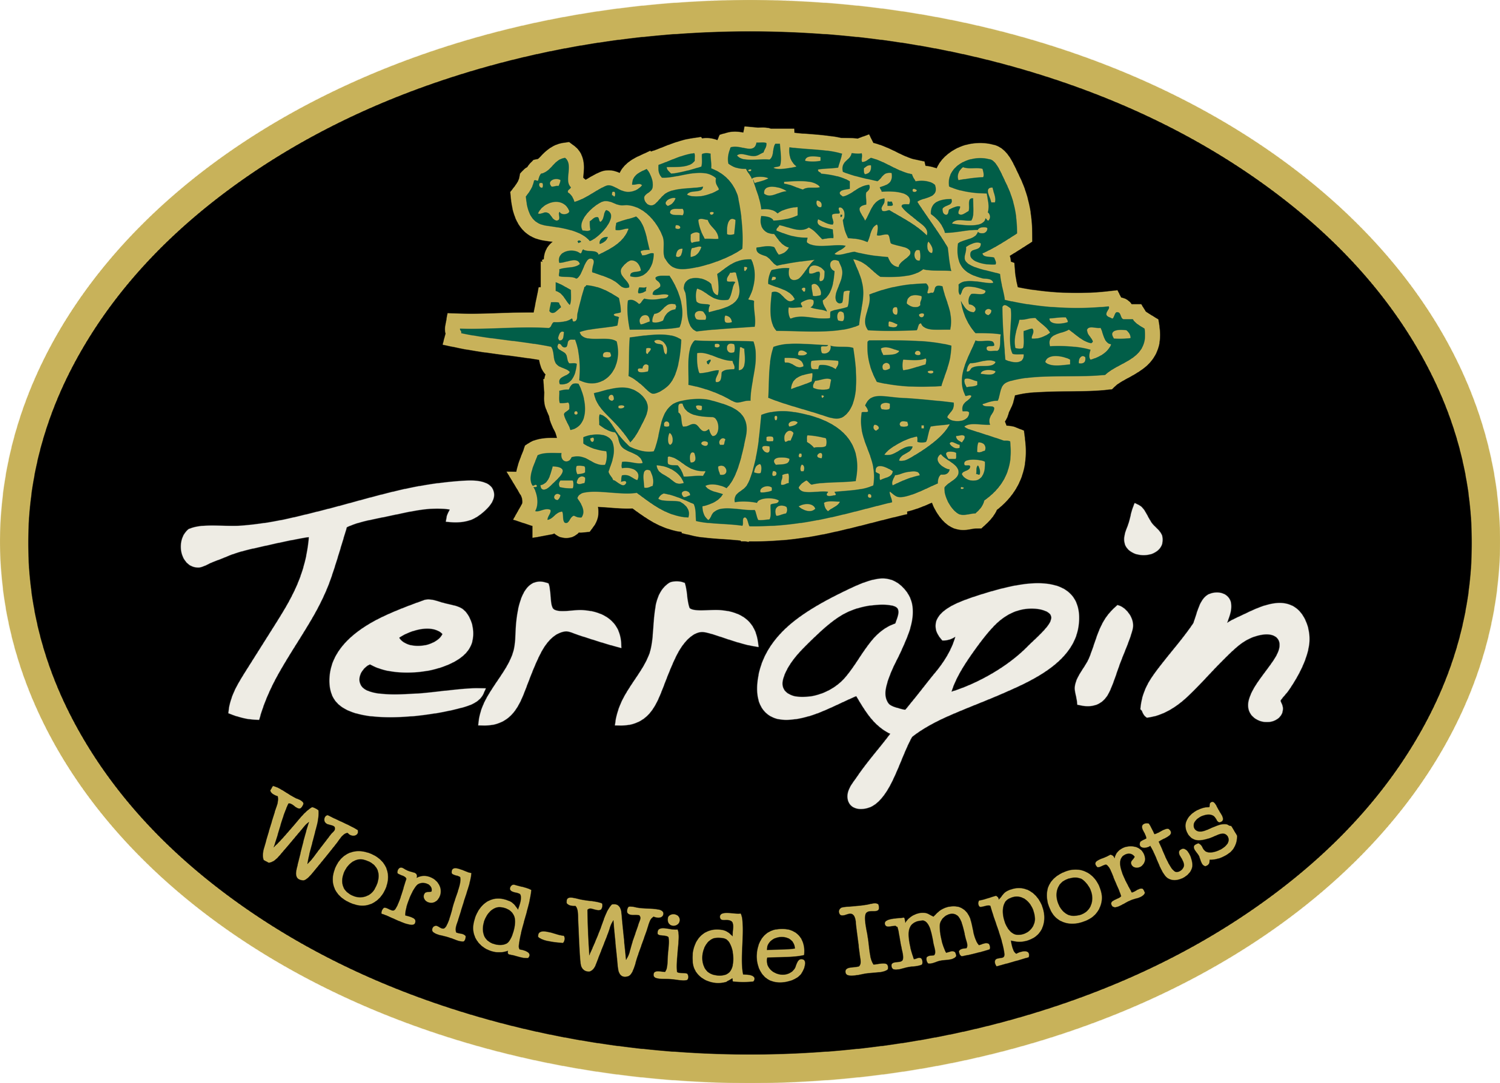 Terrapin Inc